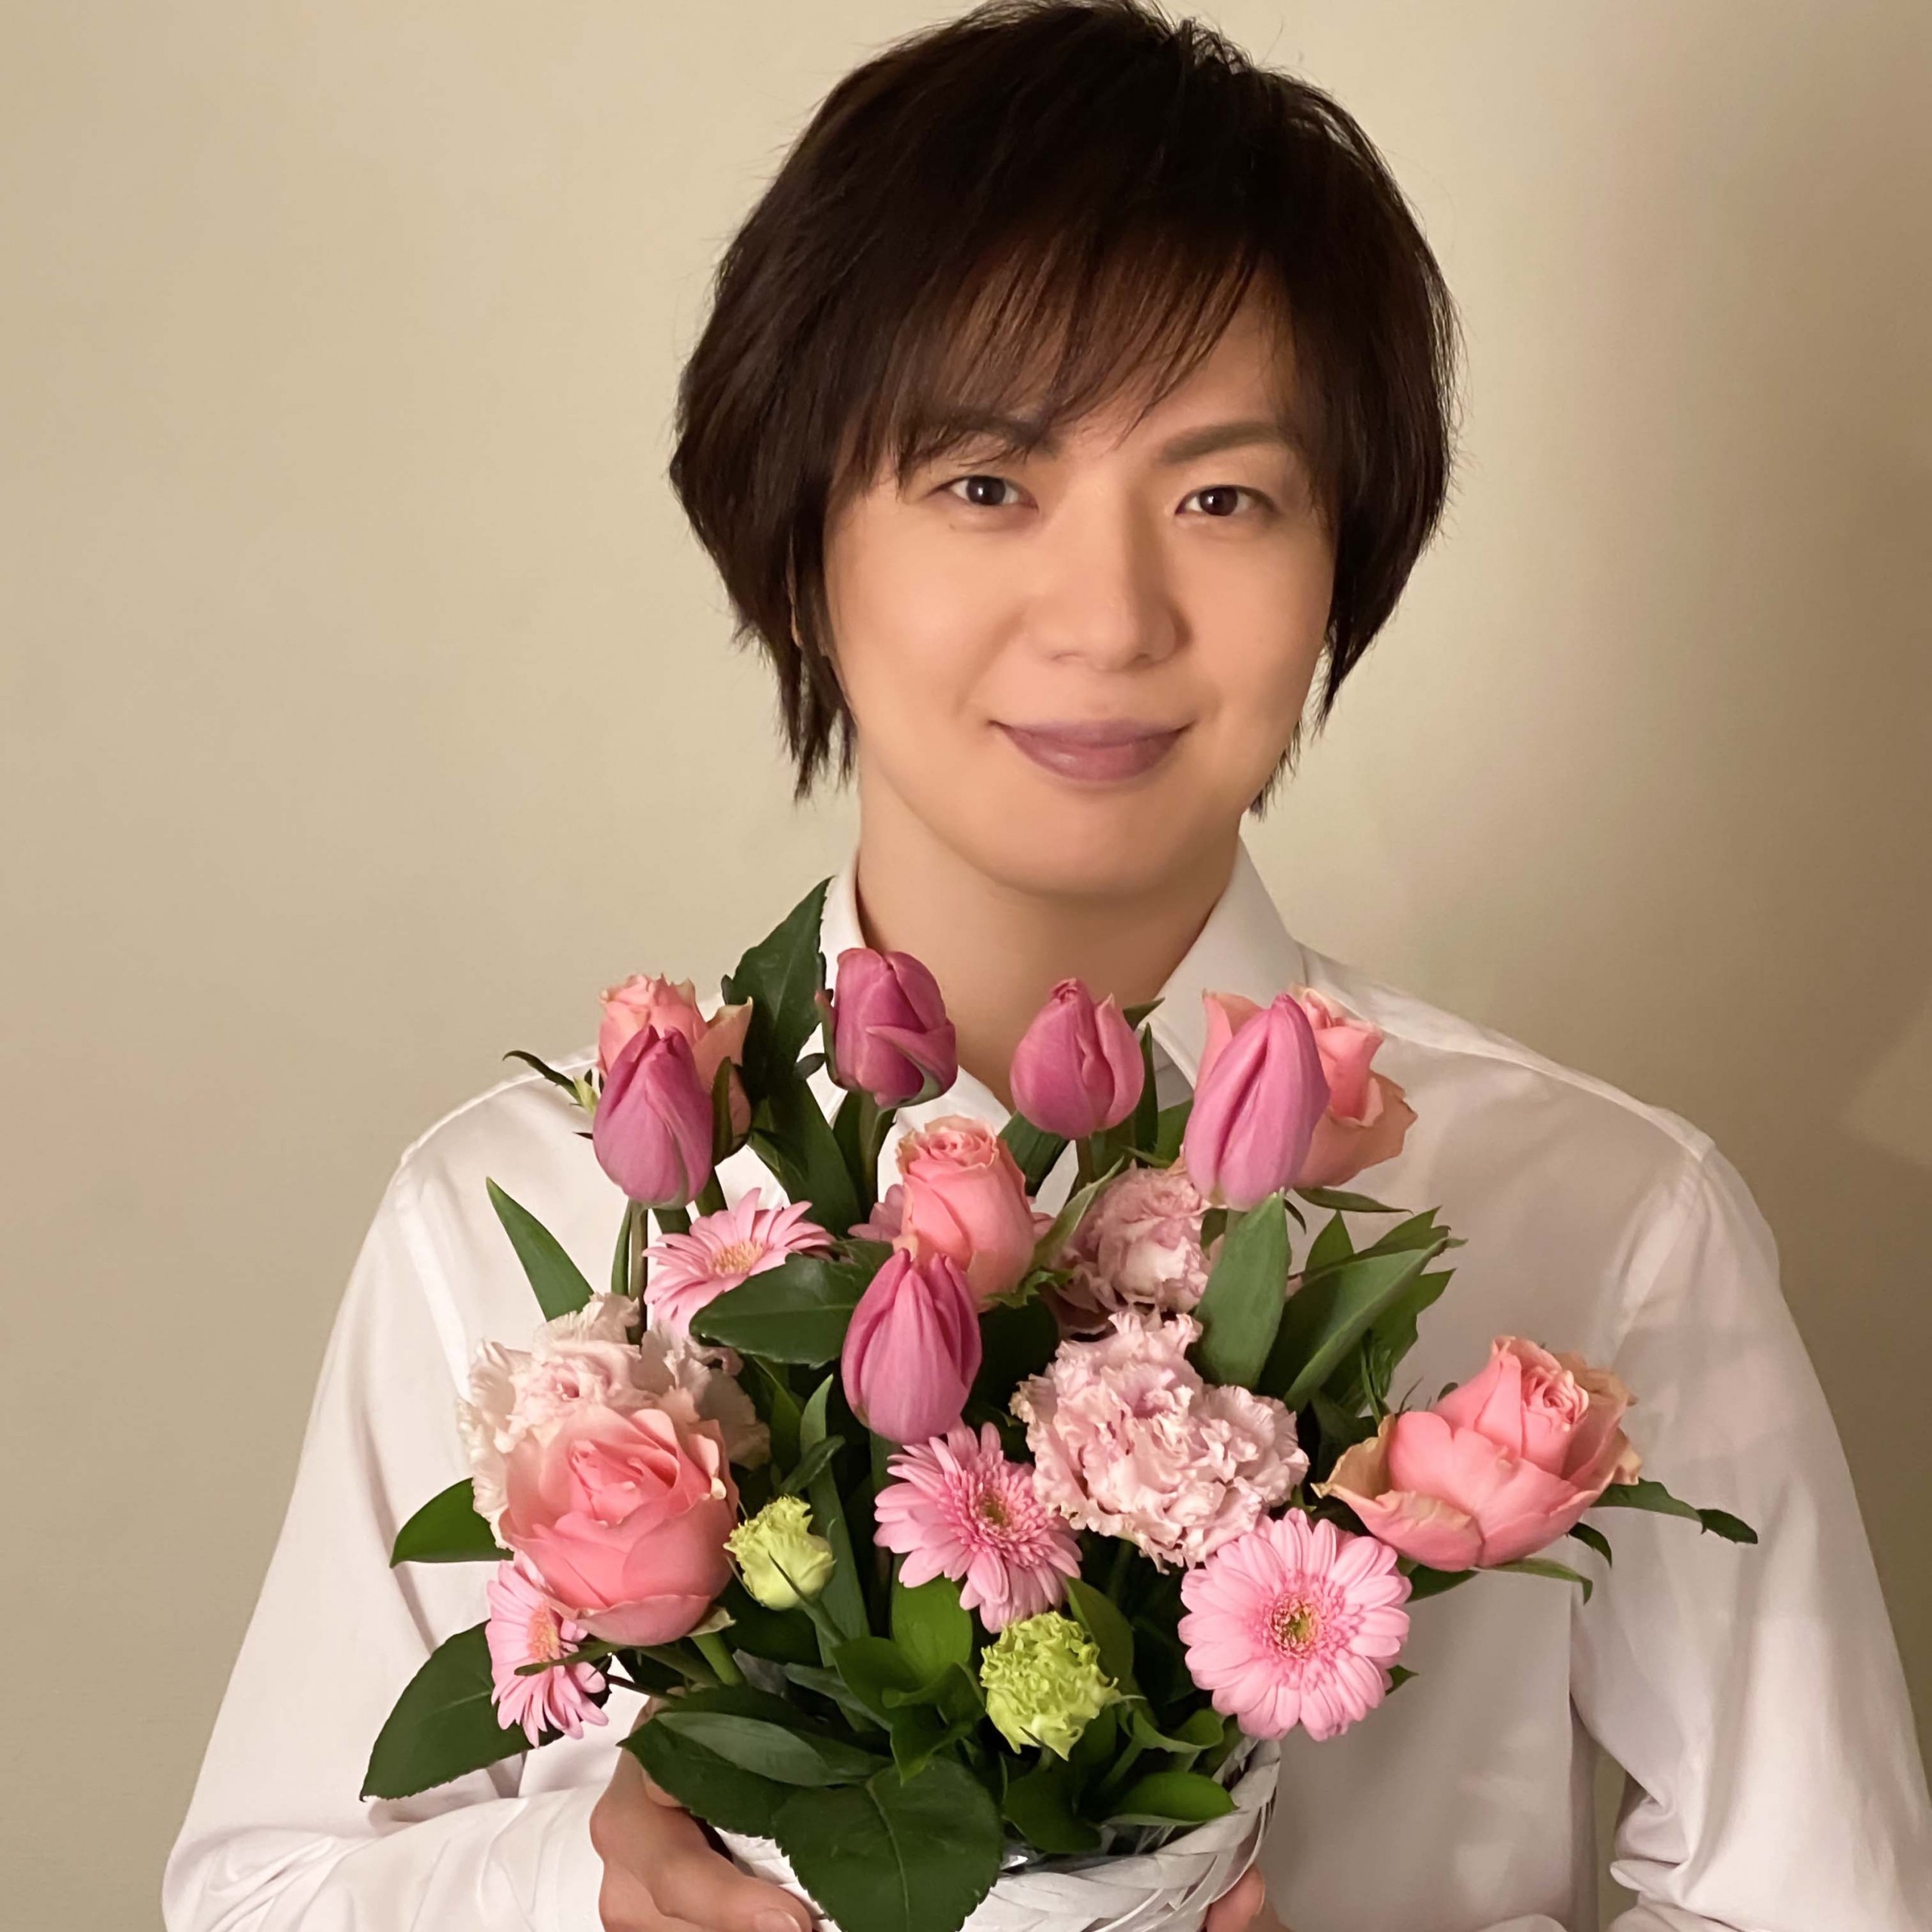 竹島 宏、新曲「向かい風 純情」を発売。「新曲をたくさん聴いて応援し